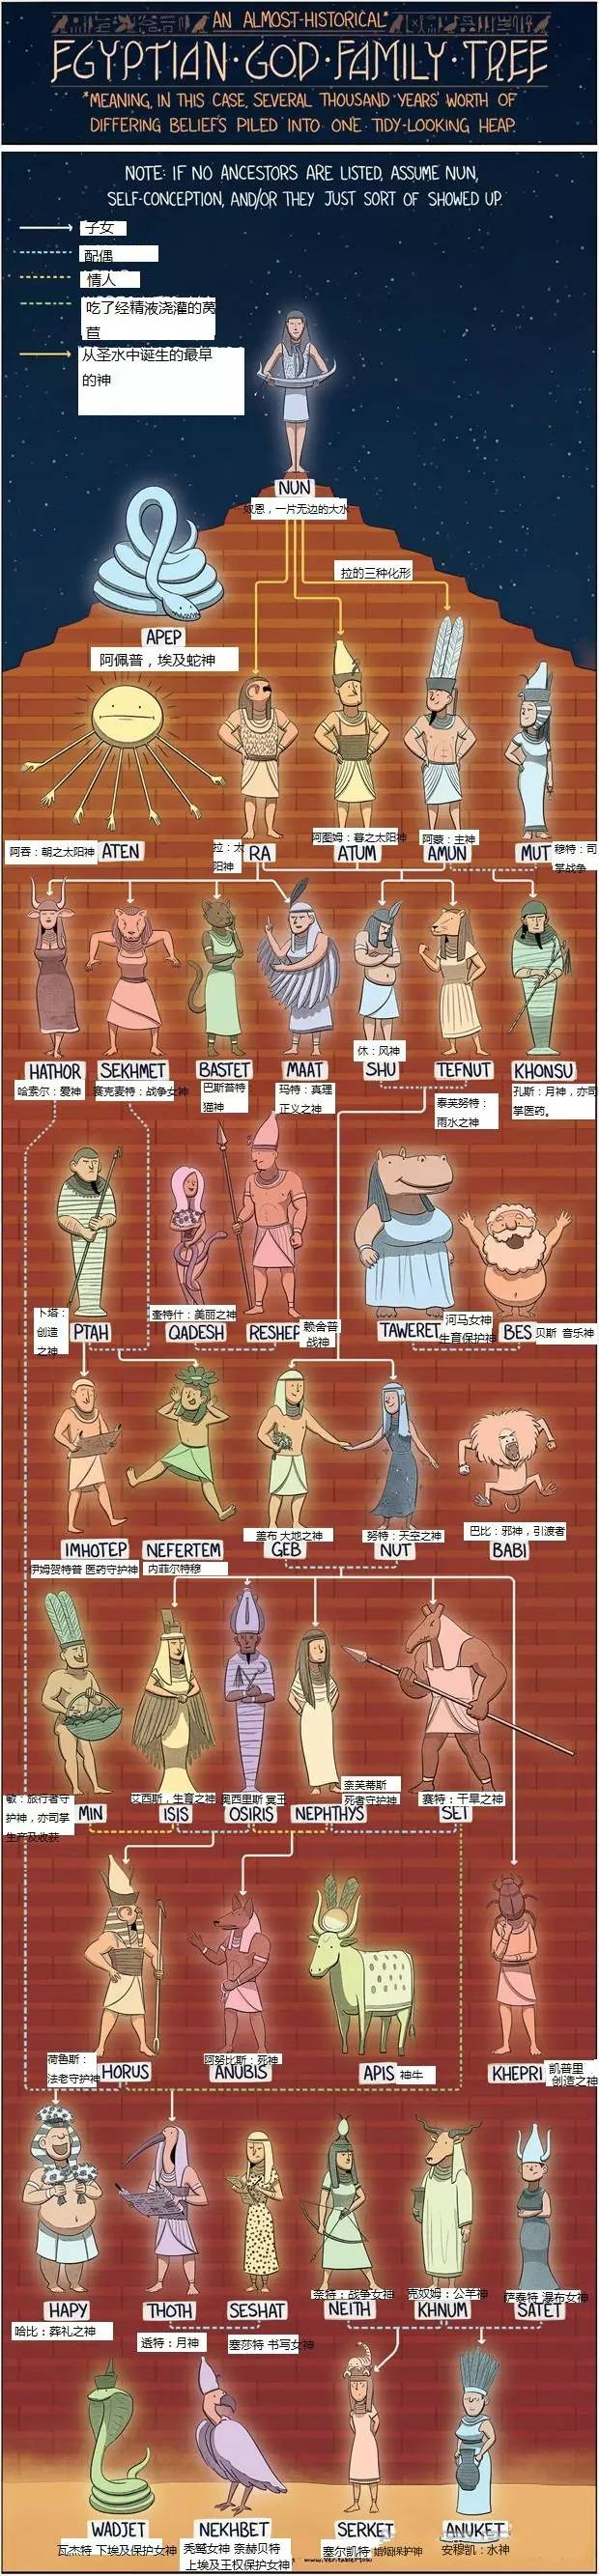 希腊罗马神话,埃及神话,北欧神话,中国古代神话各类人物关系一览图